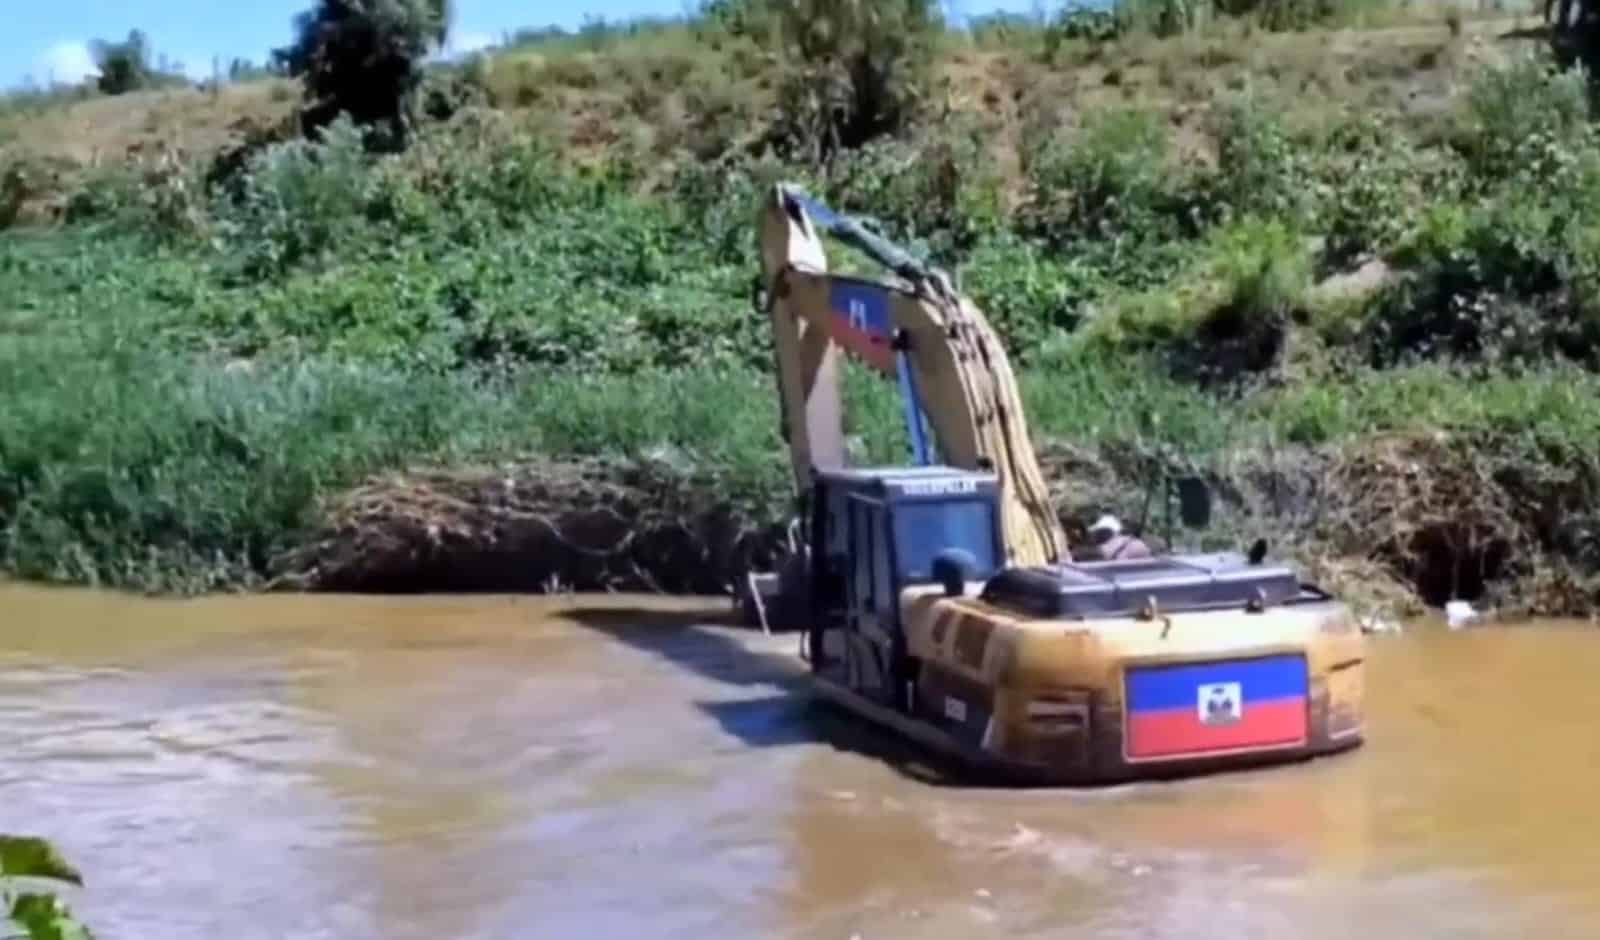 Haitianos buscan represar río masacre con retroexcavadora para desviar agua por canal